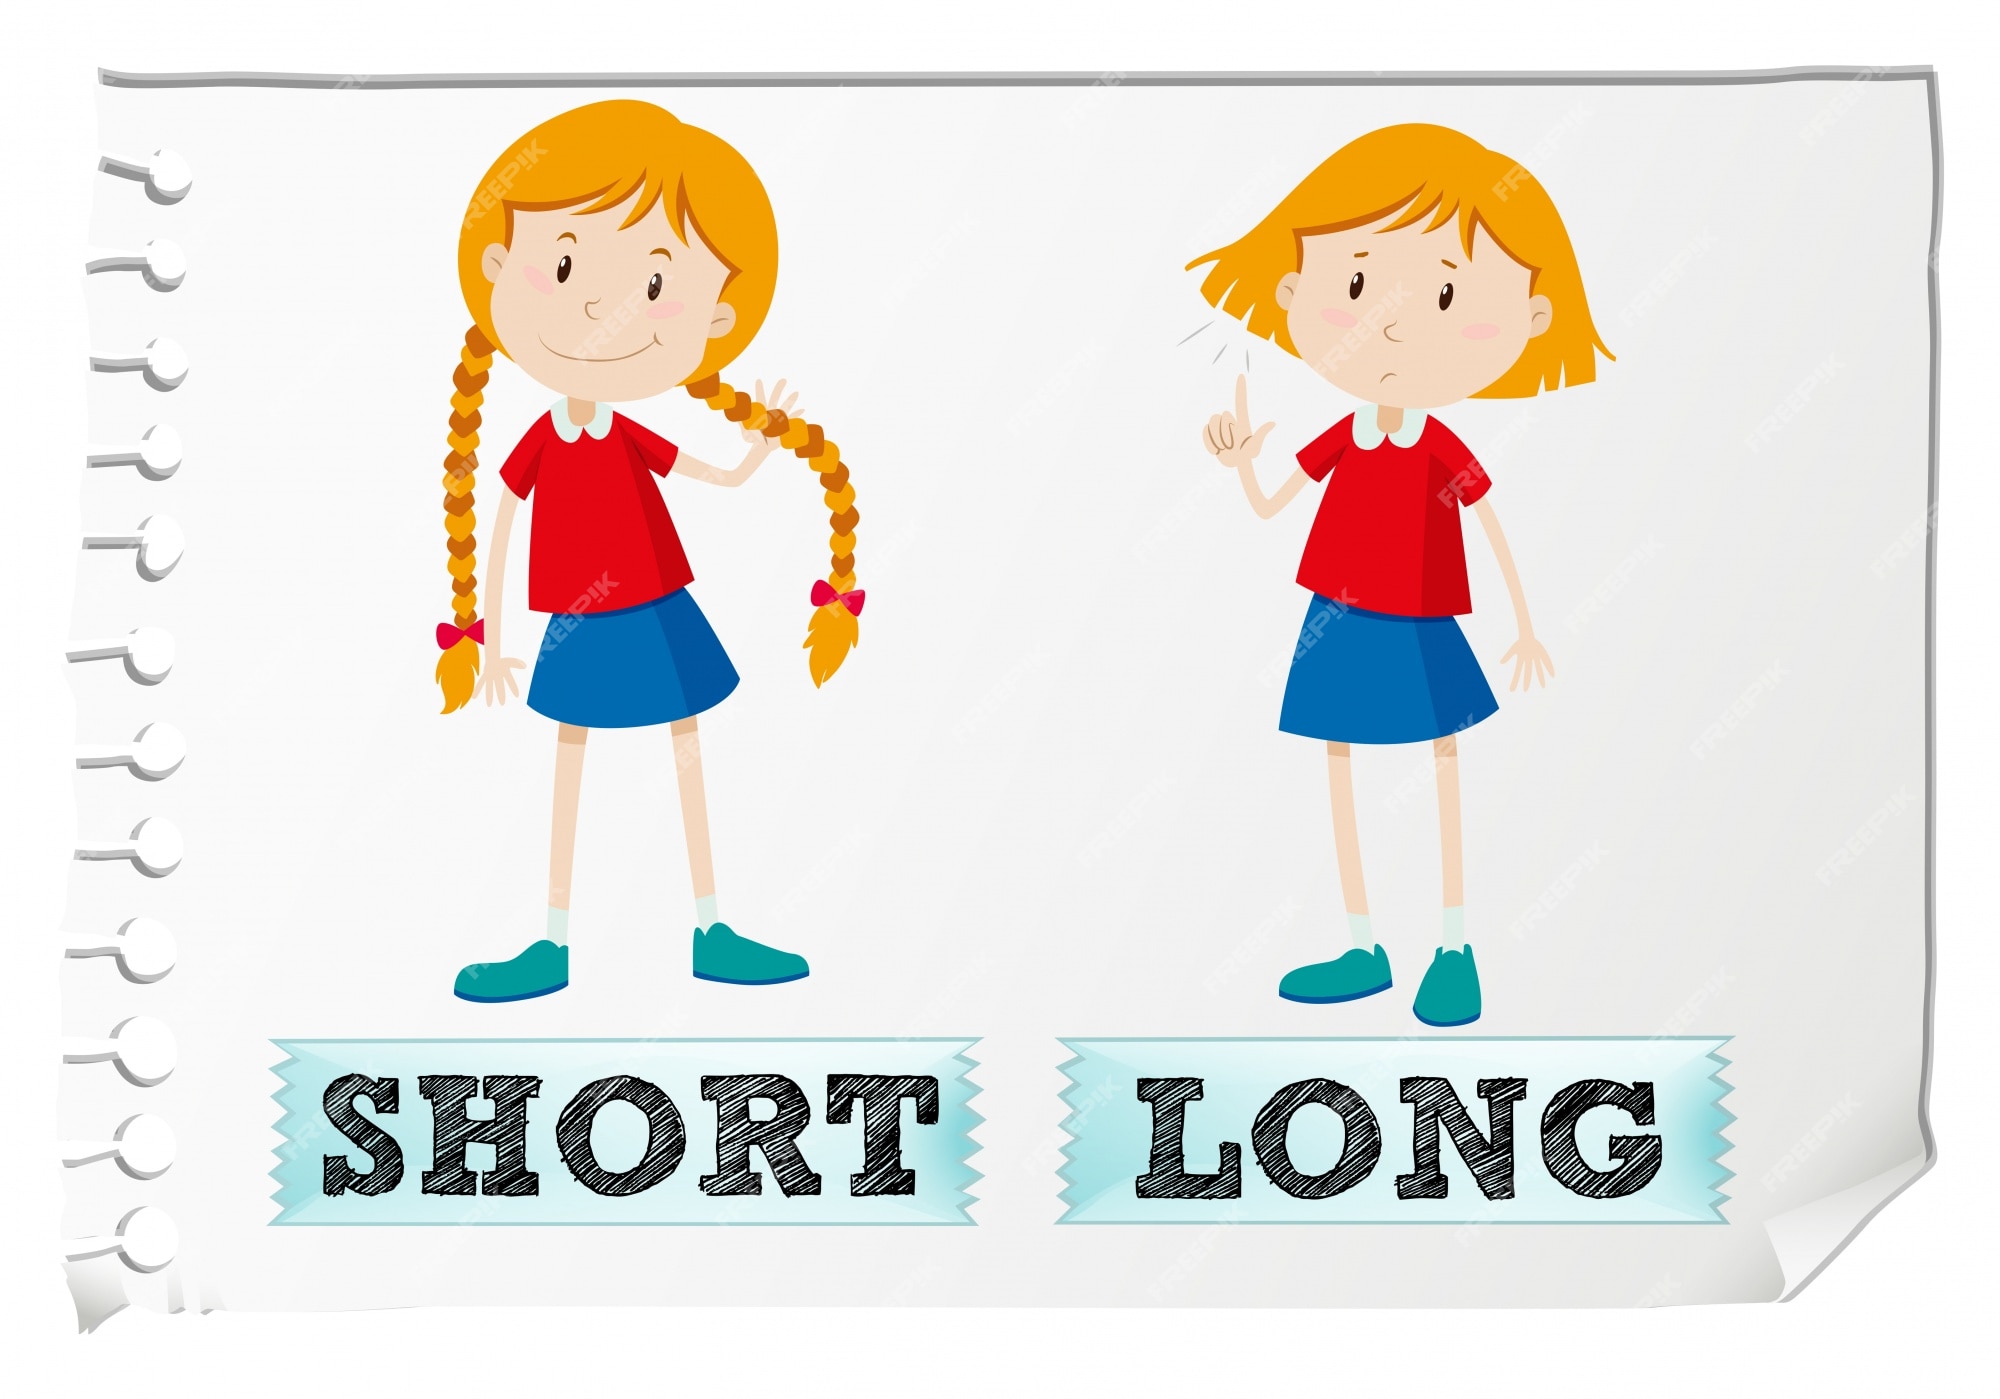 She got short. Long short для детей. Длинный короткий на английском. Карточки long short. Long short картинка для детей.